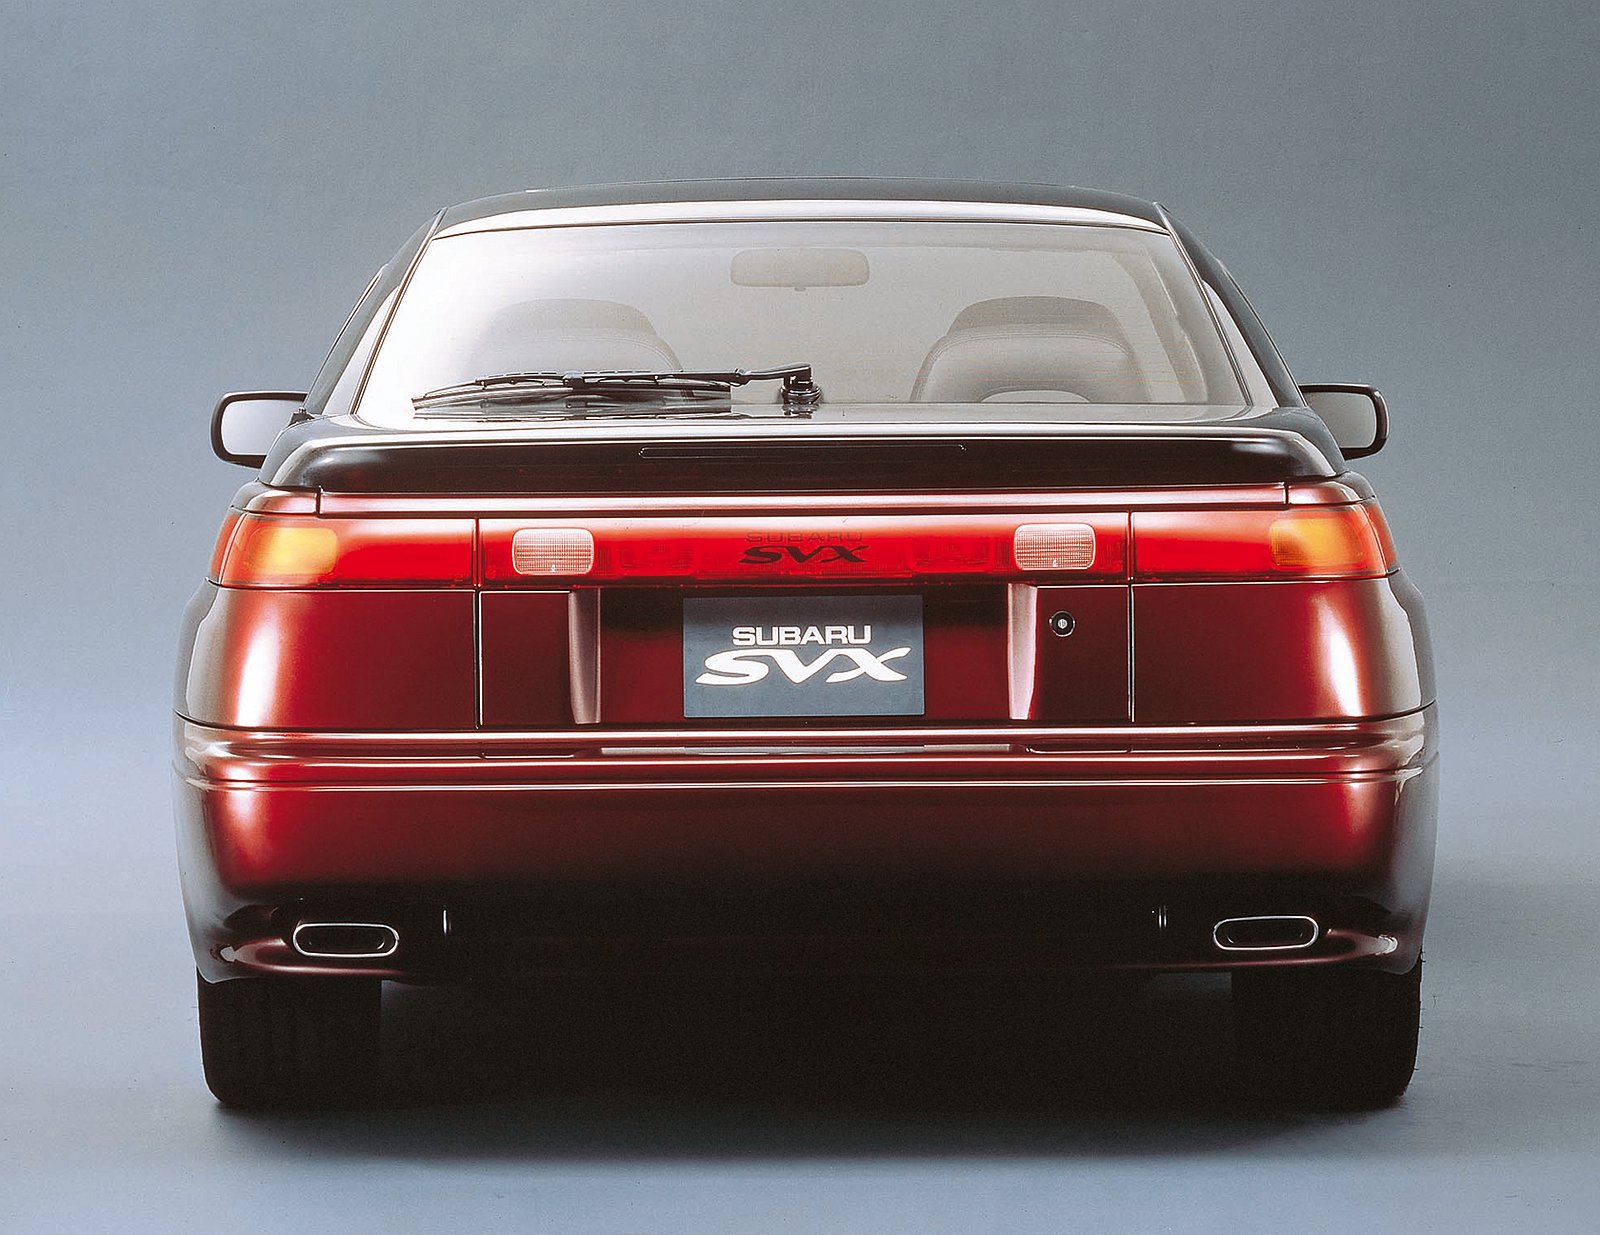 Subaru SVX (ItalDesign), 1989